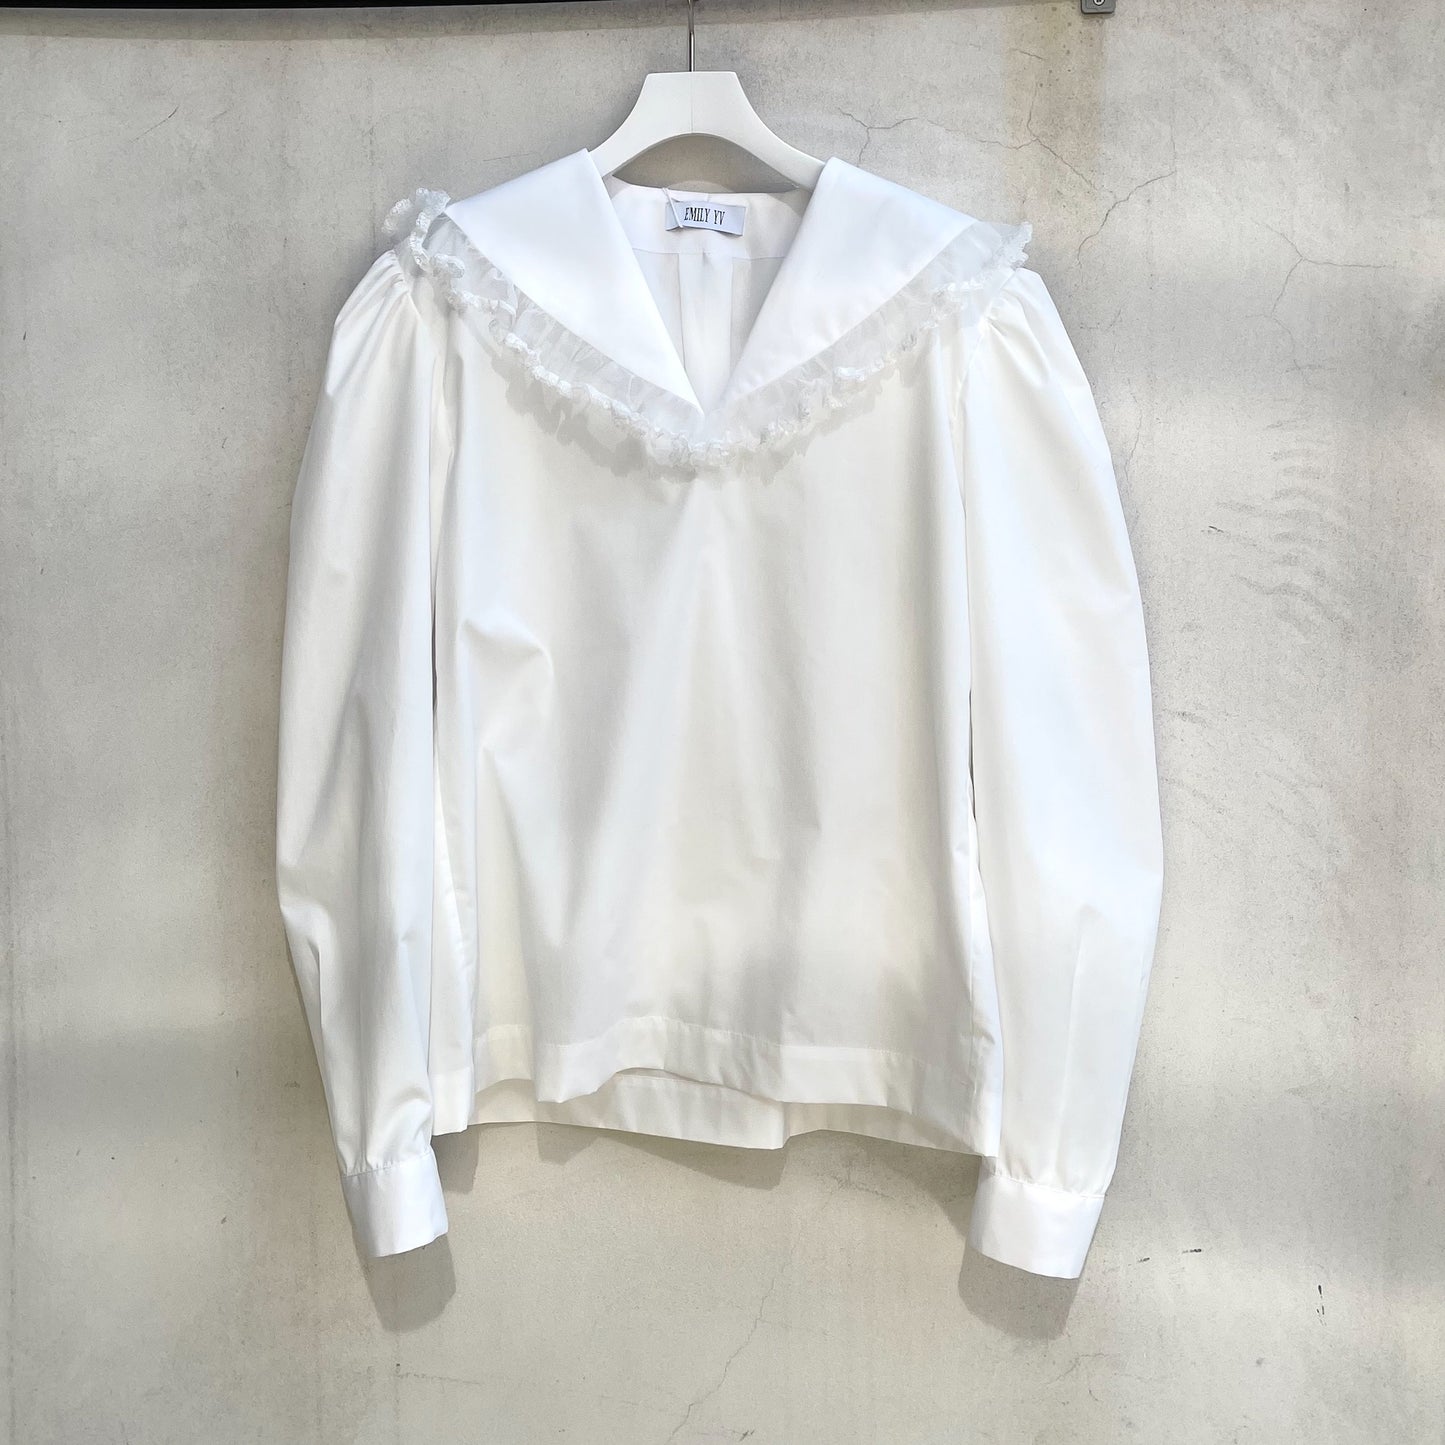 Sailor blouse / White / セーラーブラウス